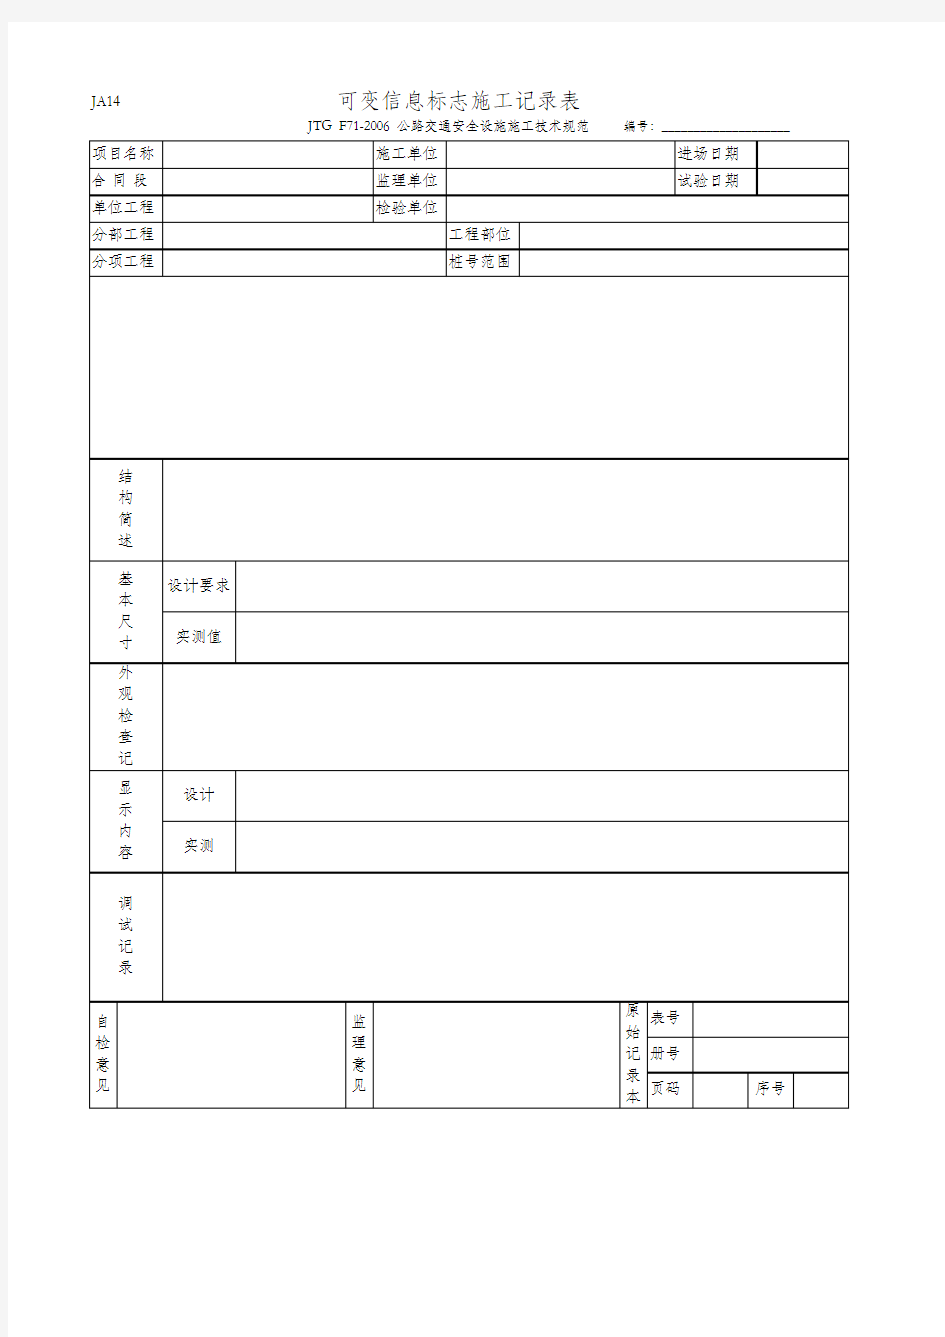 可变信息标志施工记录表(JA14 JTG F71-2006)